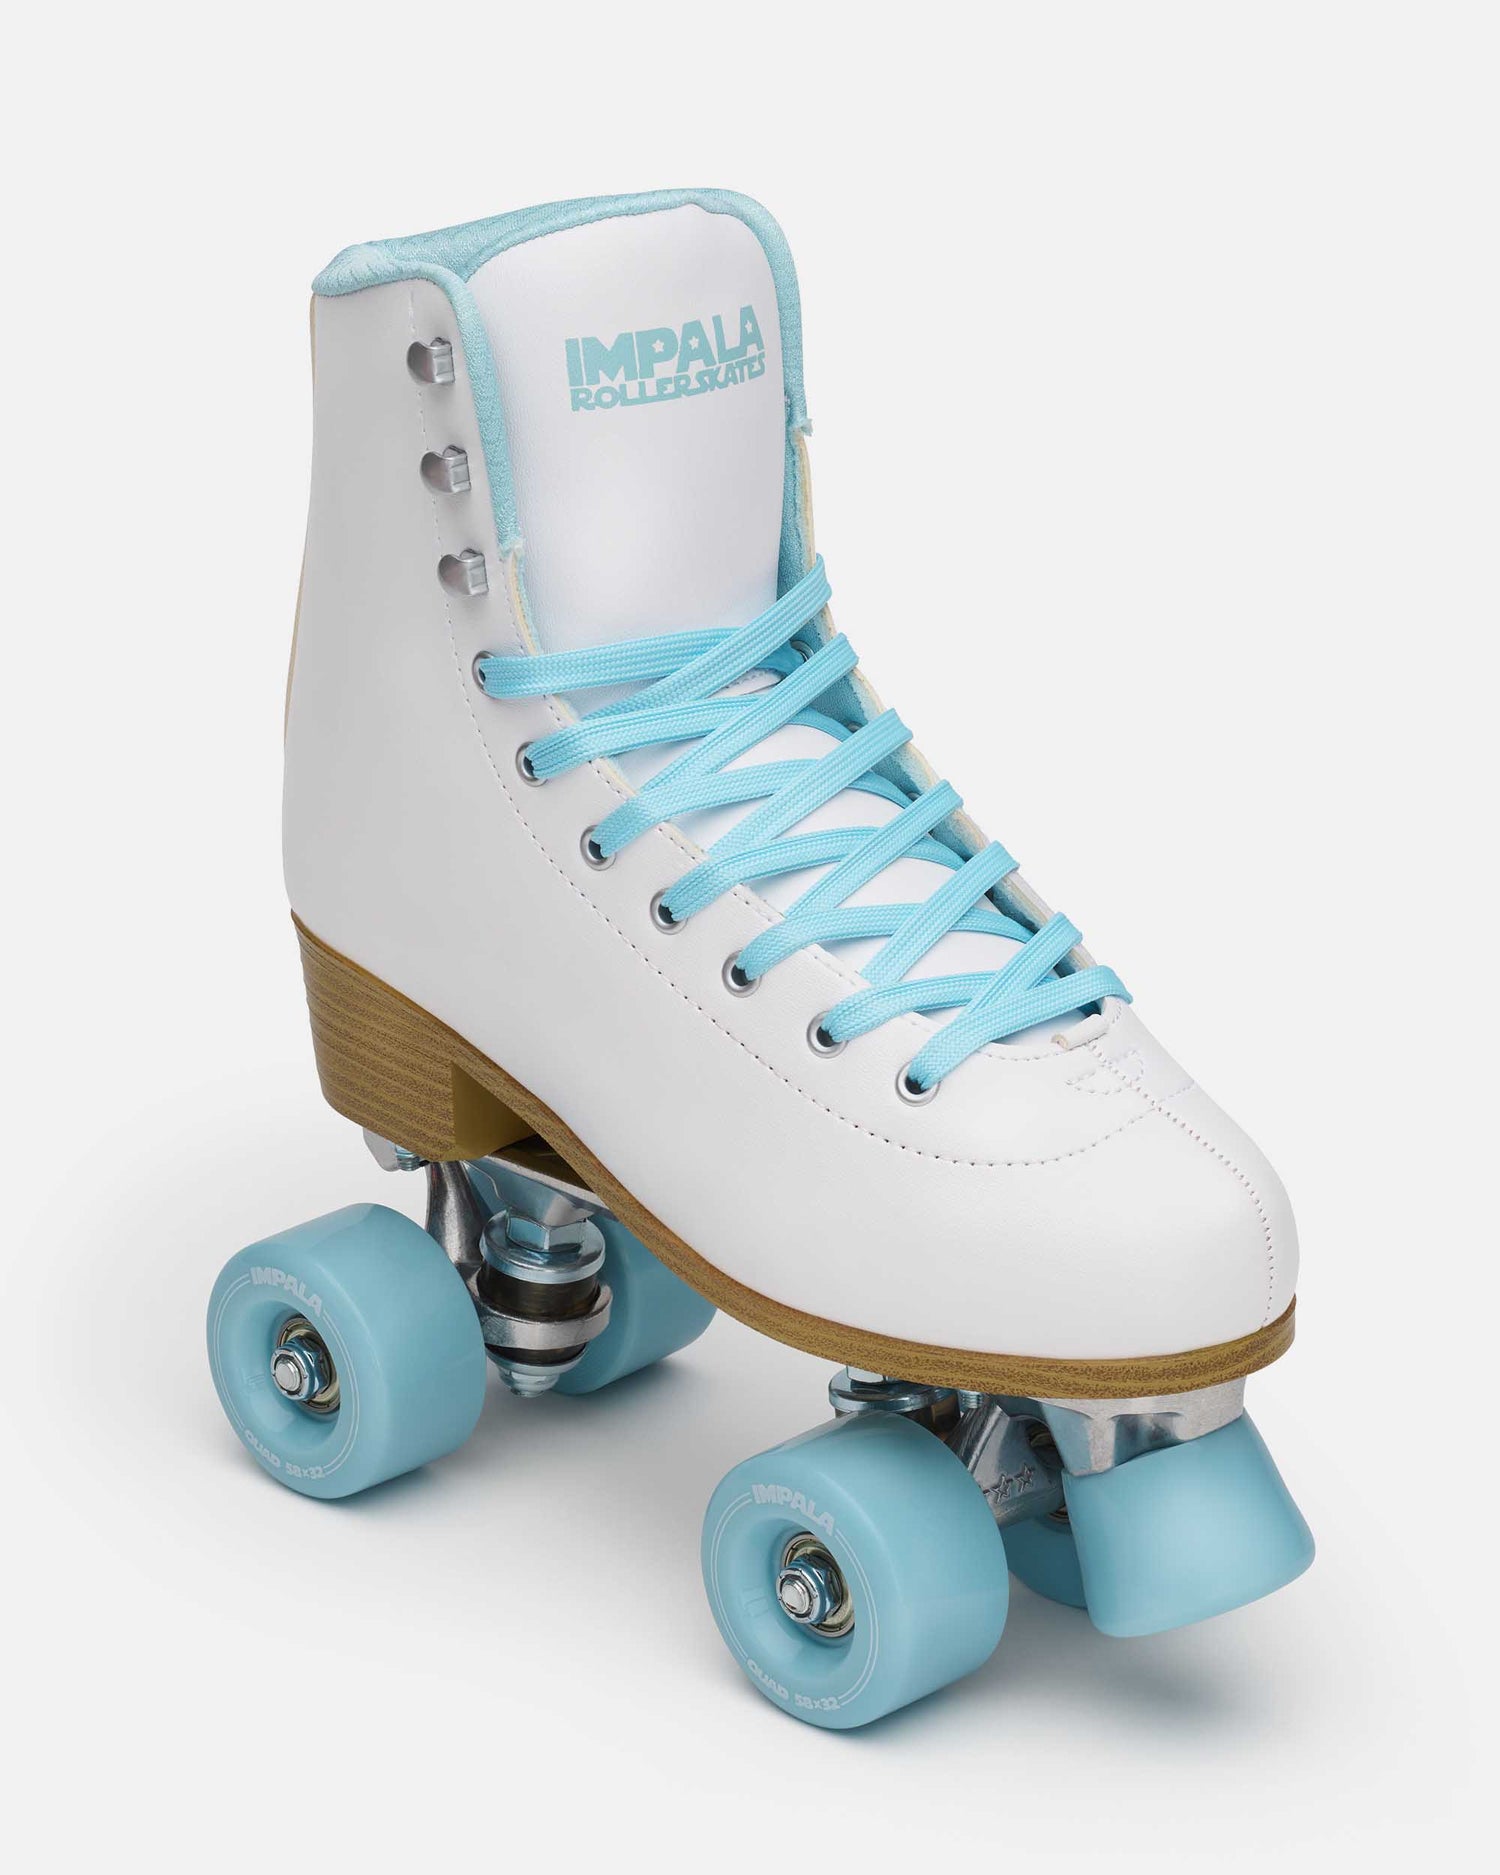 New Arrival Roller Skates